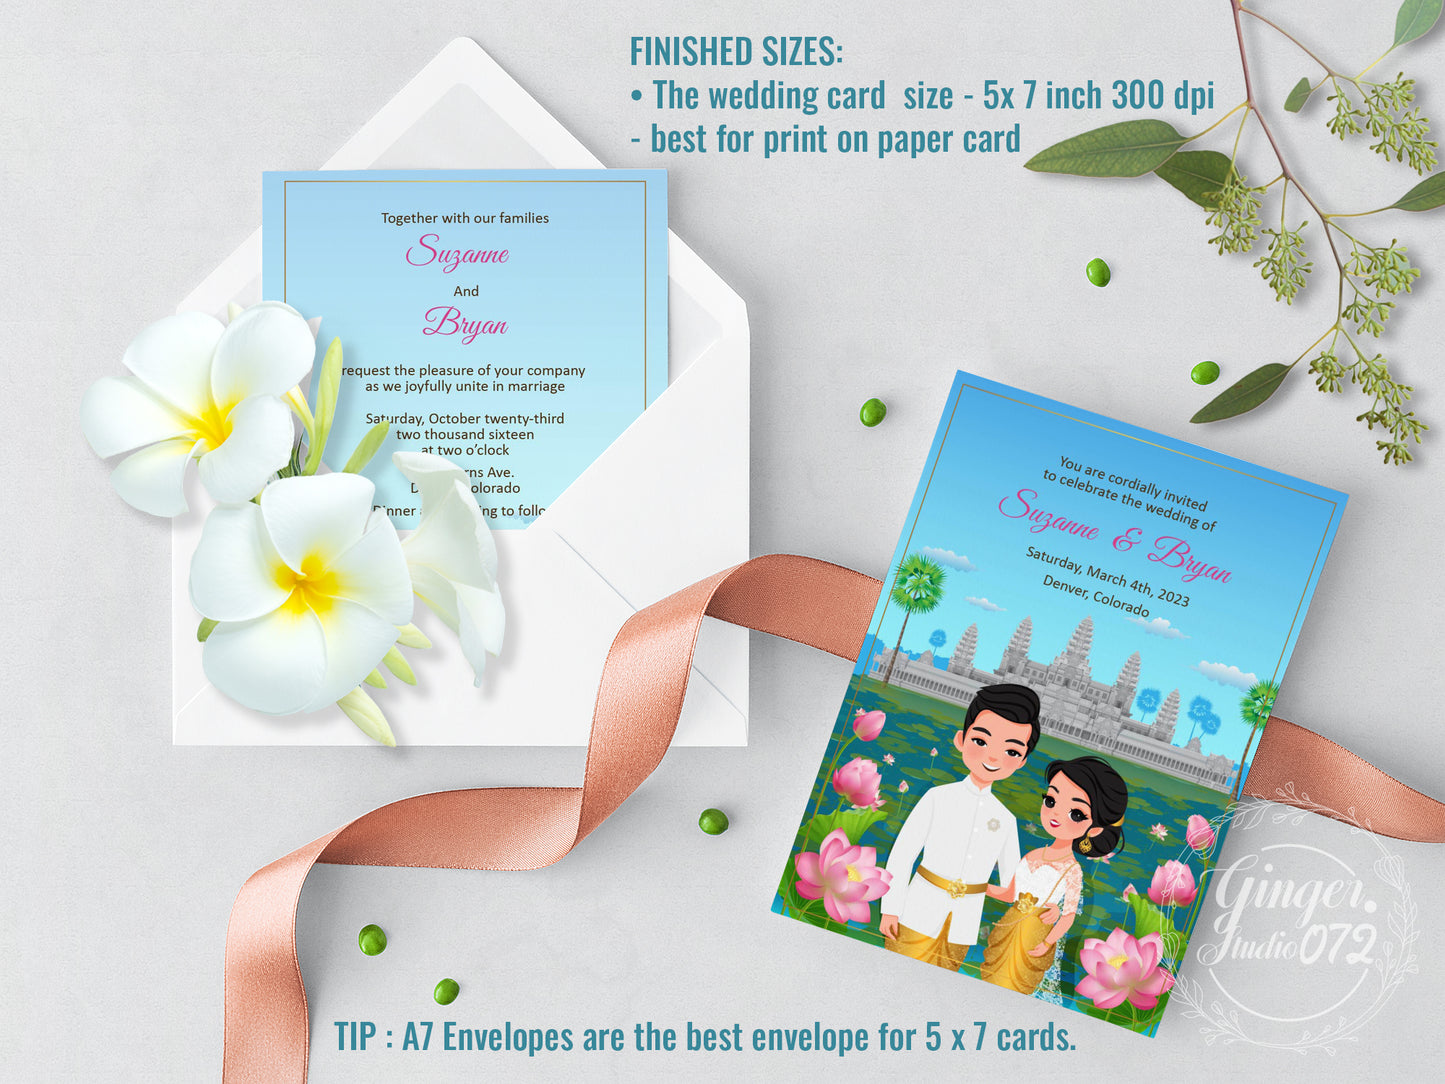 Cute Asian, Khmer, Lao, Thai Wedding invitation, E-Invite template #sewc220802